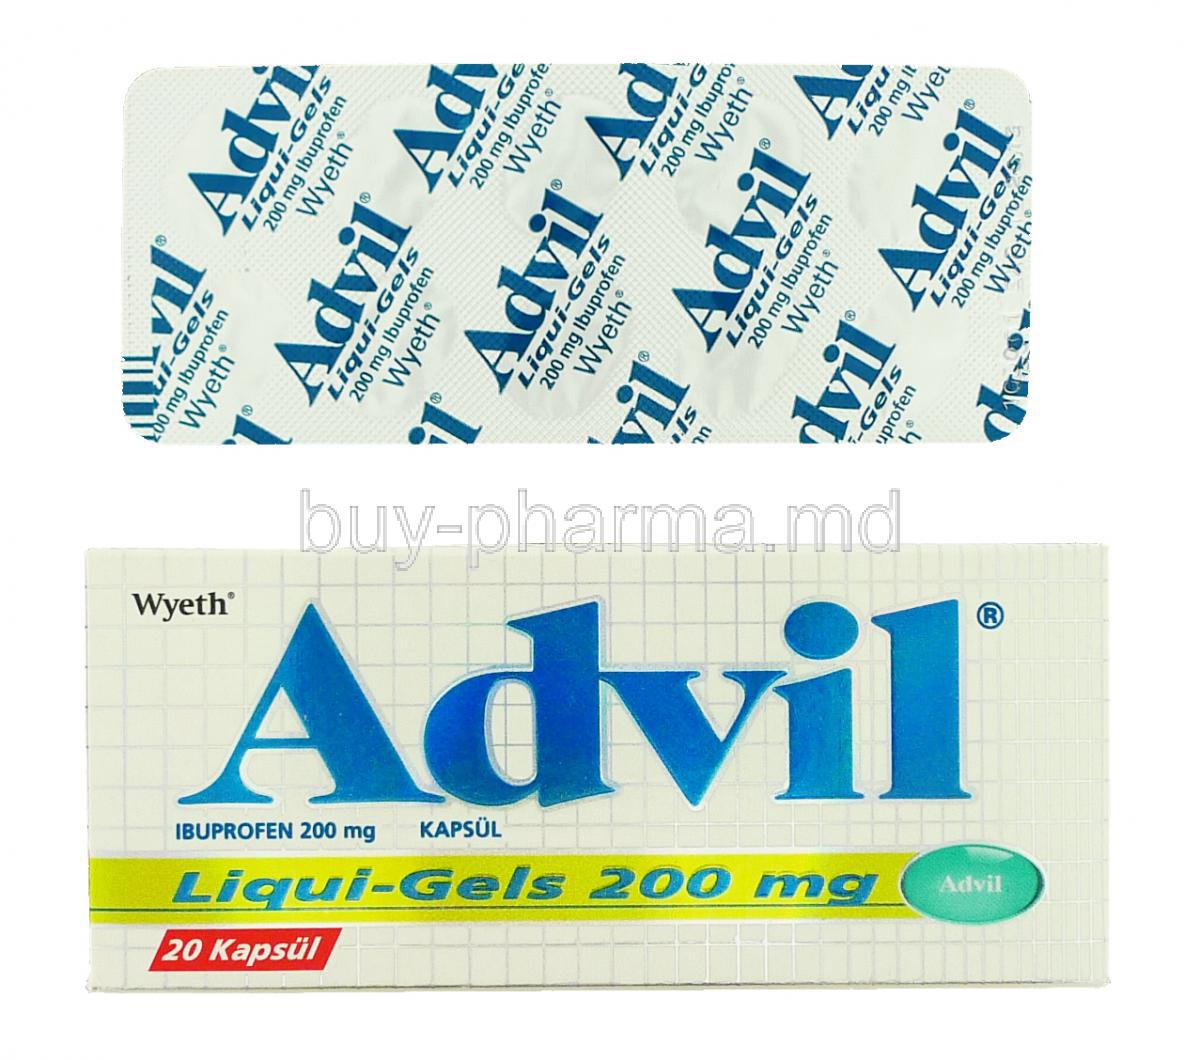 Advil Liquigel